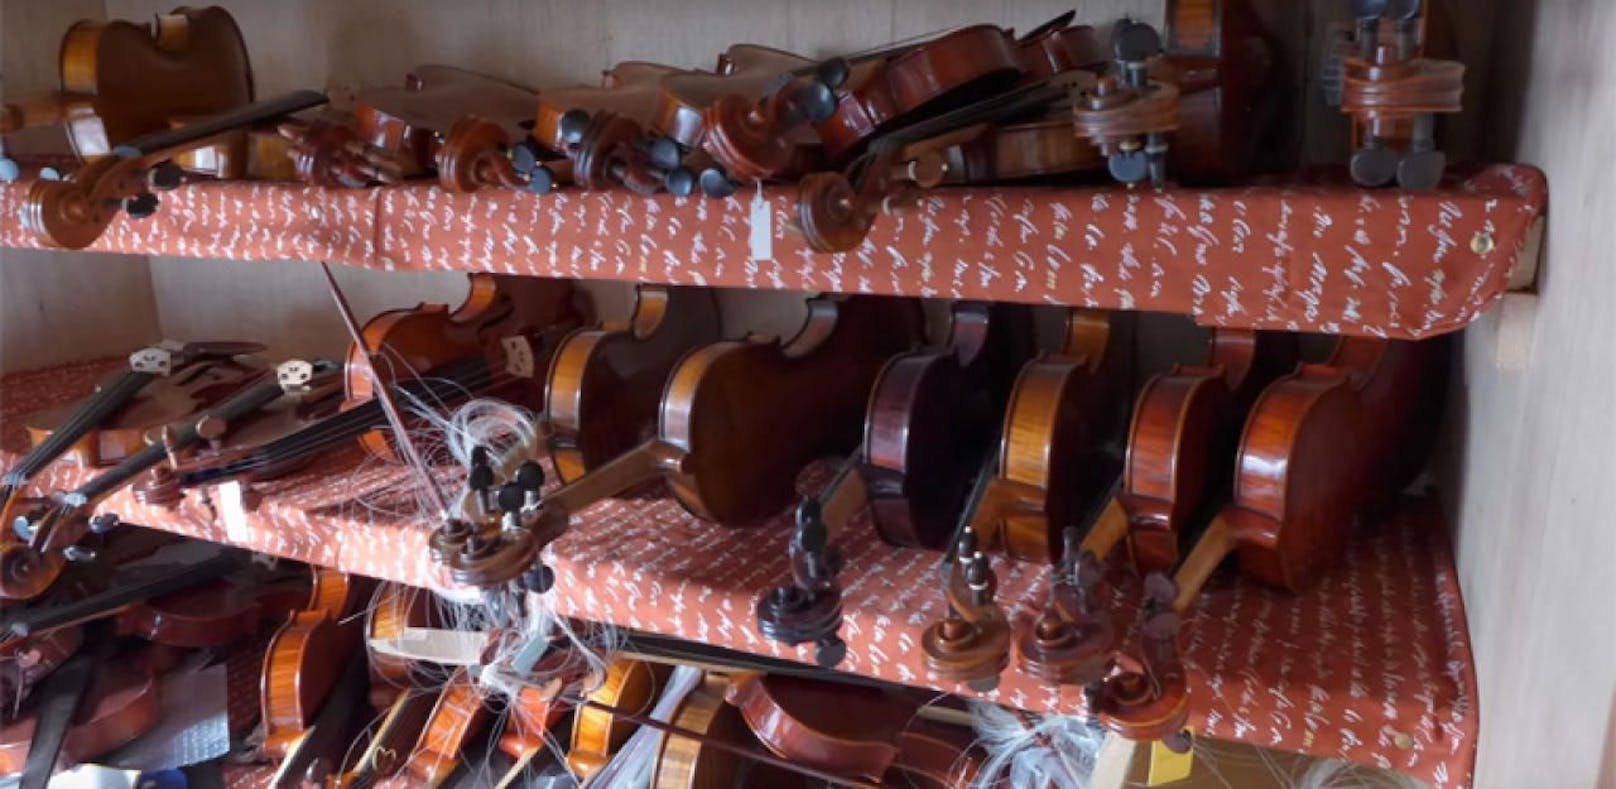 Ex-Frau zerstört 800.000- Euro-Geigen-Sammlung